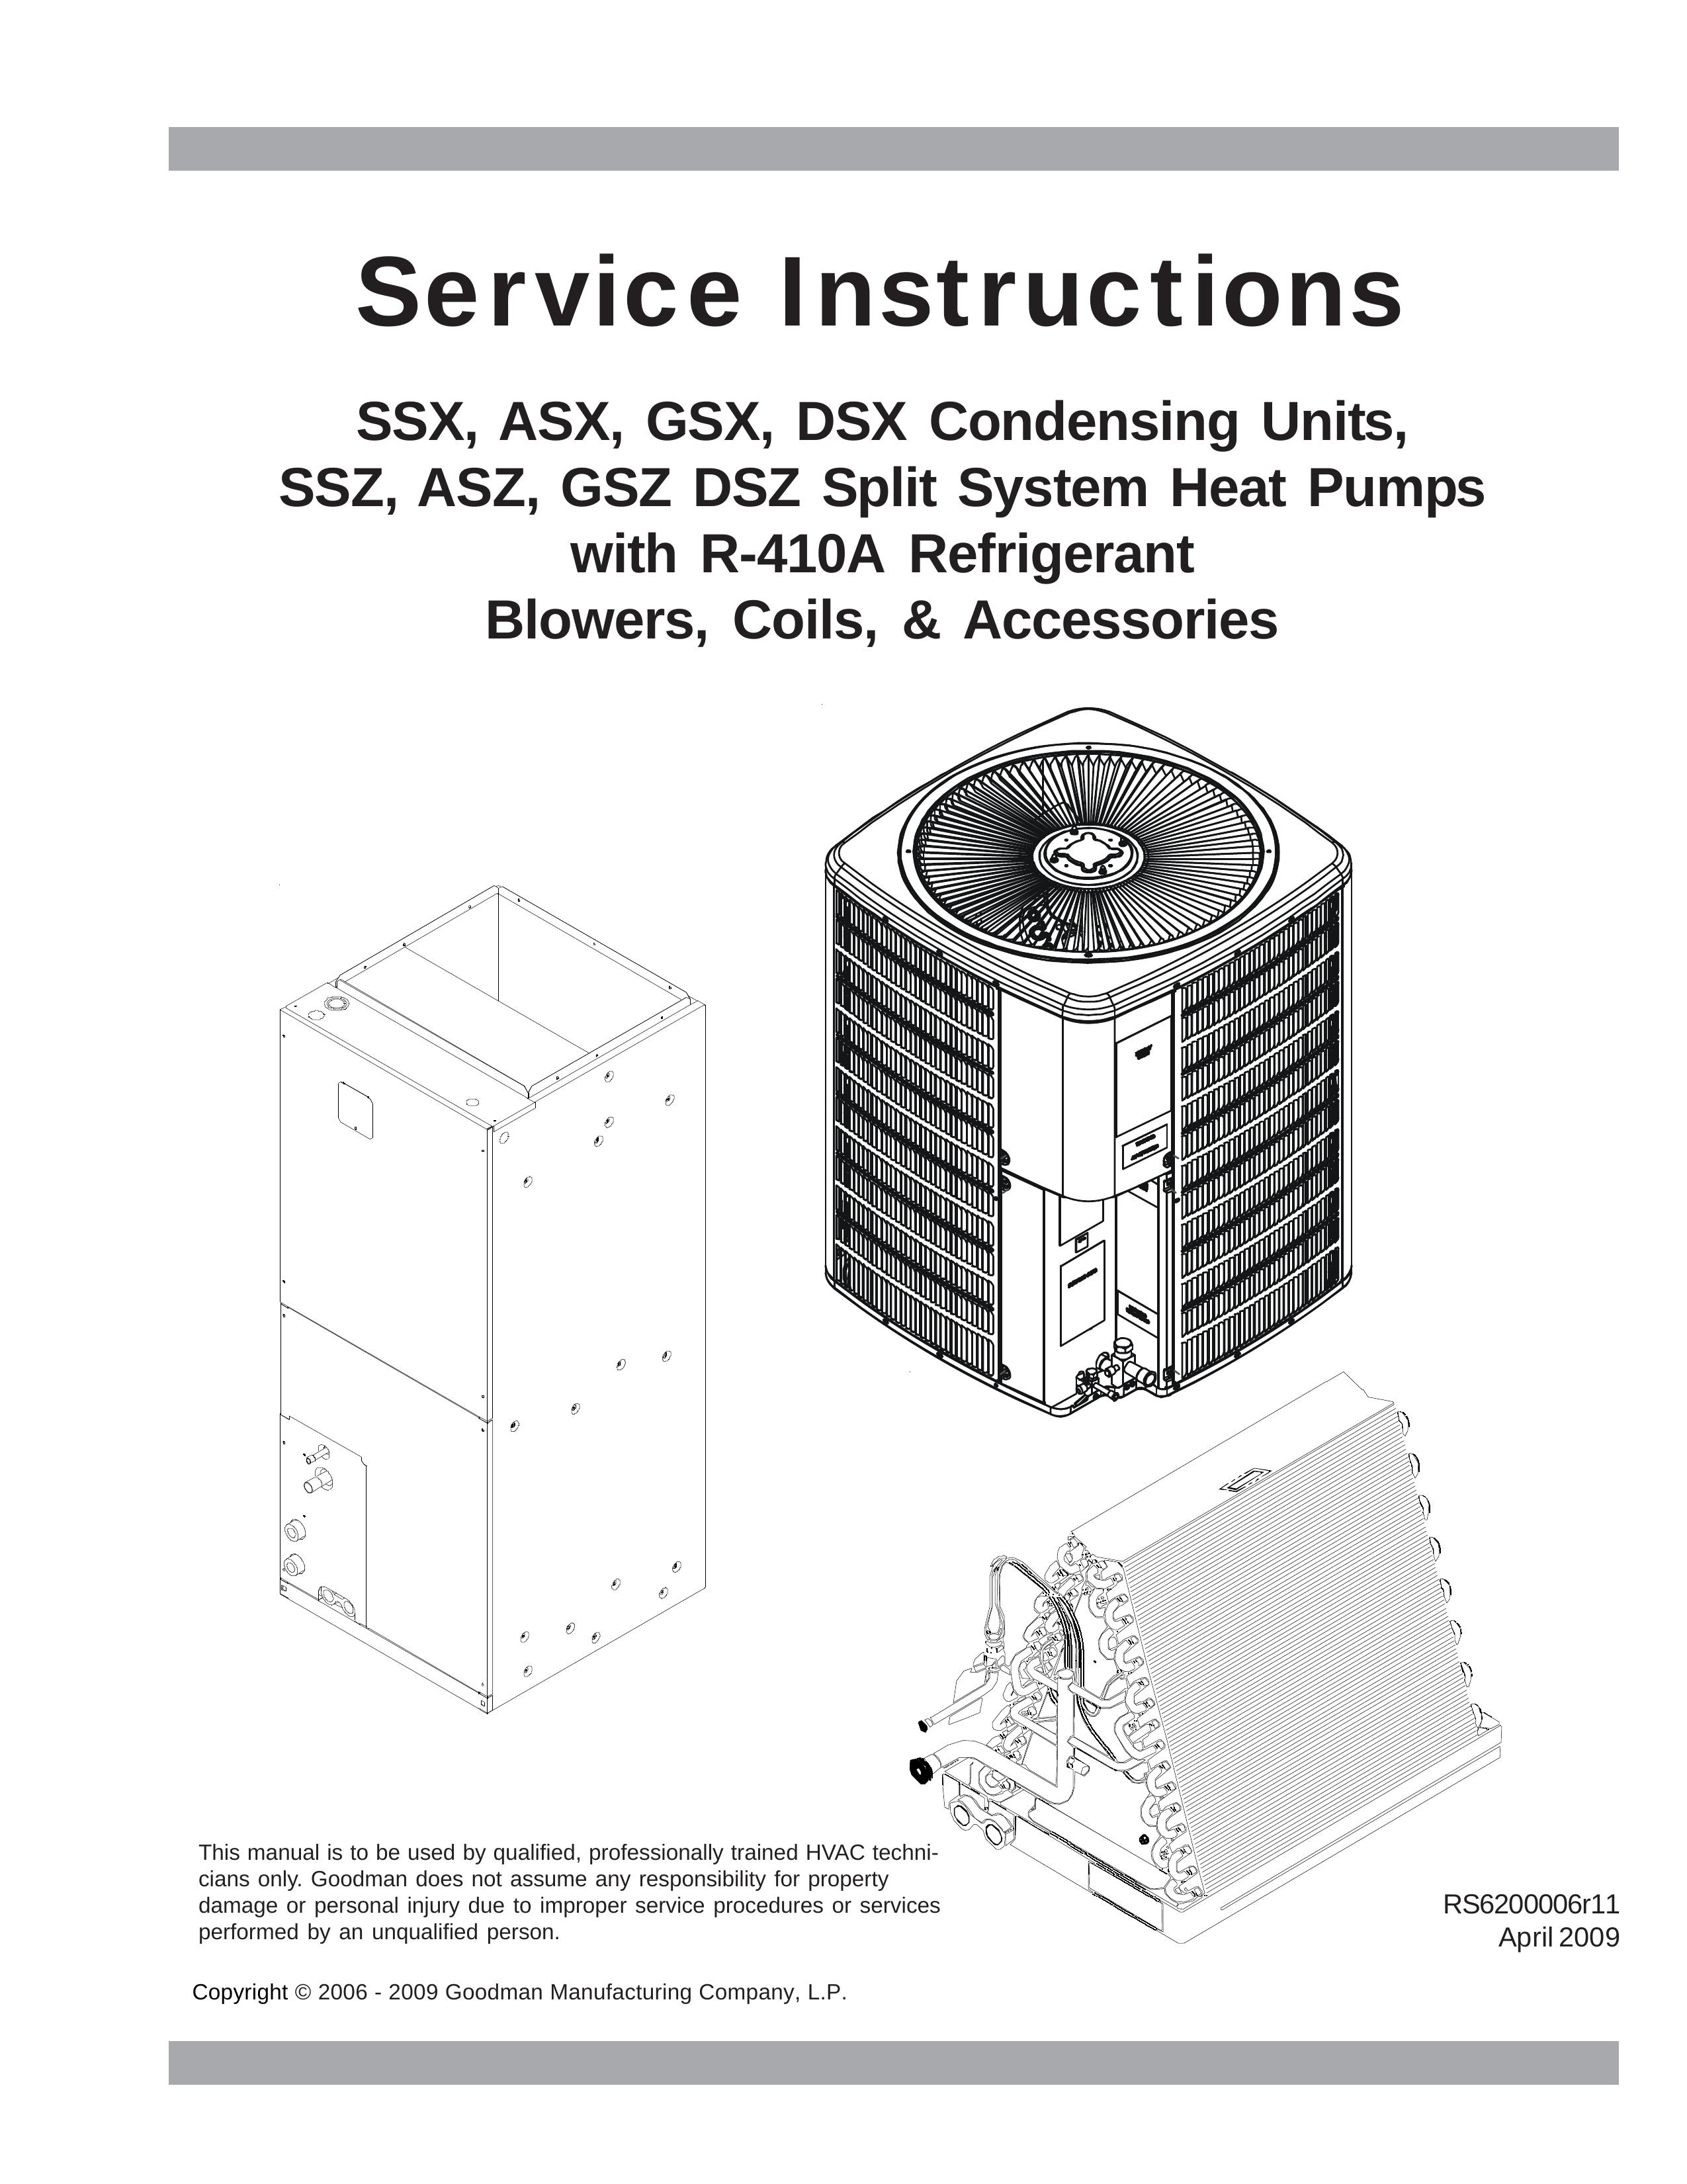 Goodmans DSZ Refrigerator User Manual